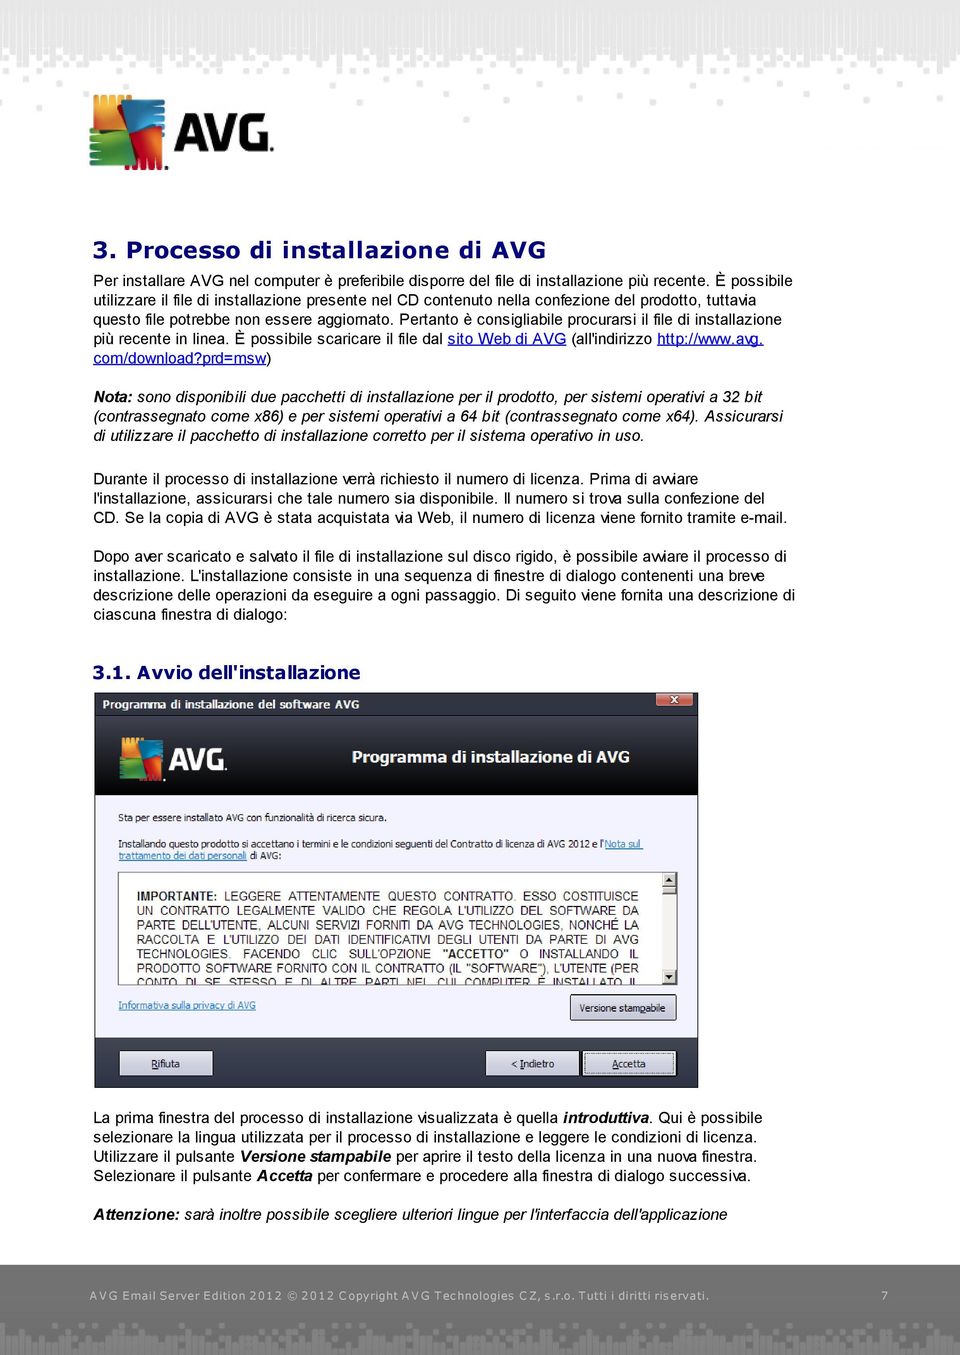 Pertanto è consigliabile procurarsi il file di installazione più recente in linea. È possibile scaricare il file dal sito Web di AVG (all'indirizzo http://www.avg. com/download?